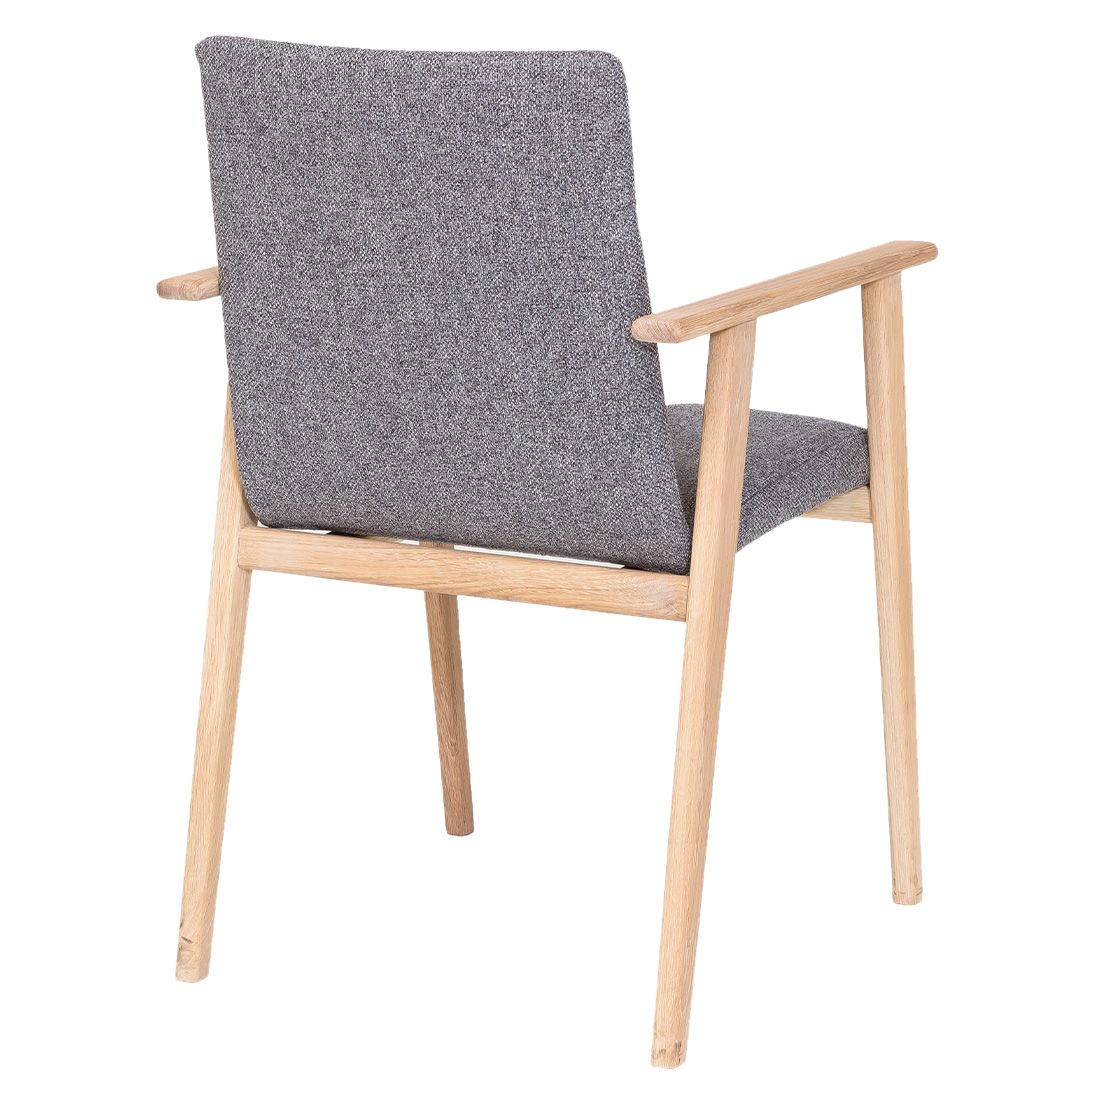 Standard Furniture Arona Armlehnstuhl